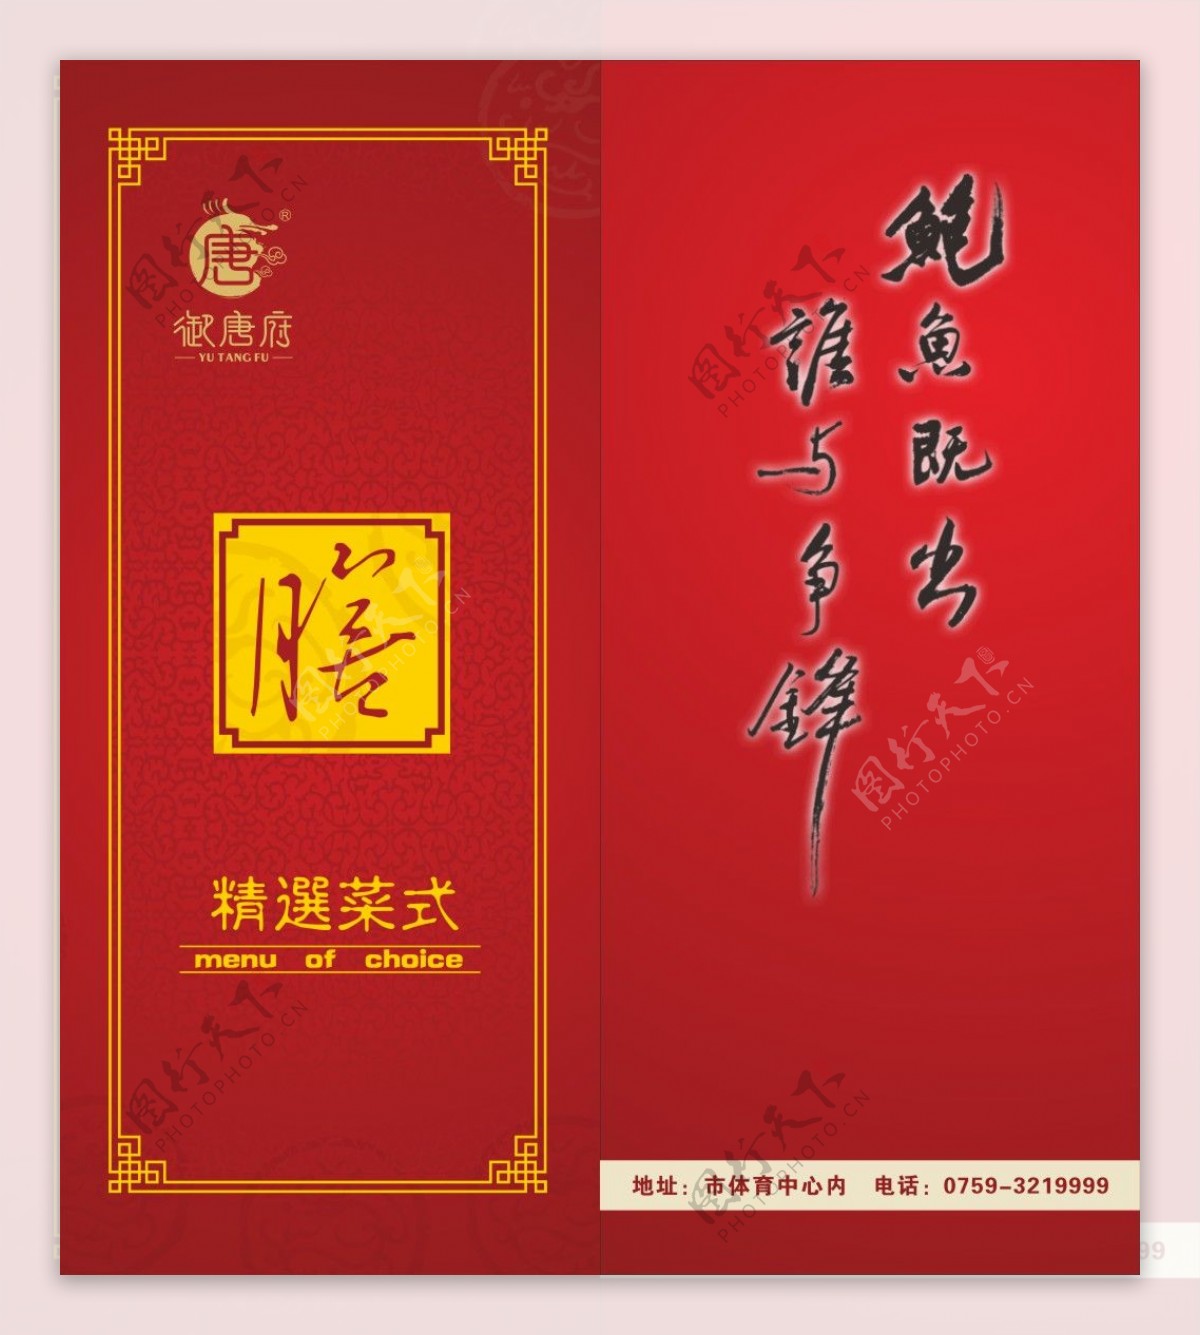 中国元素菜谱封面